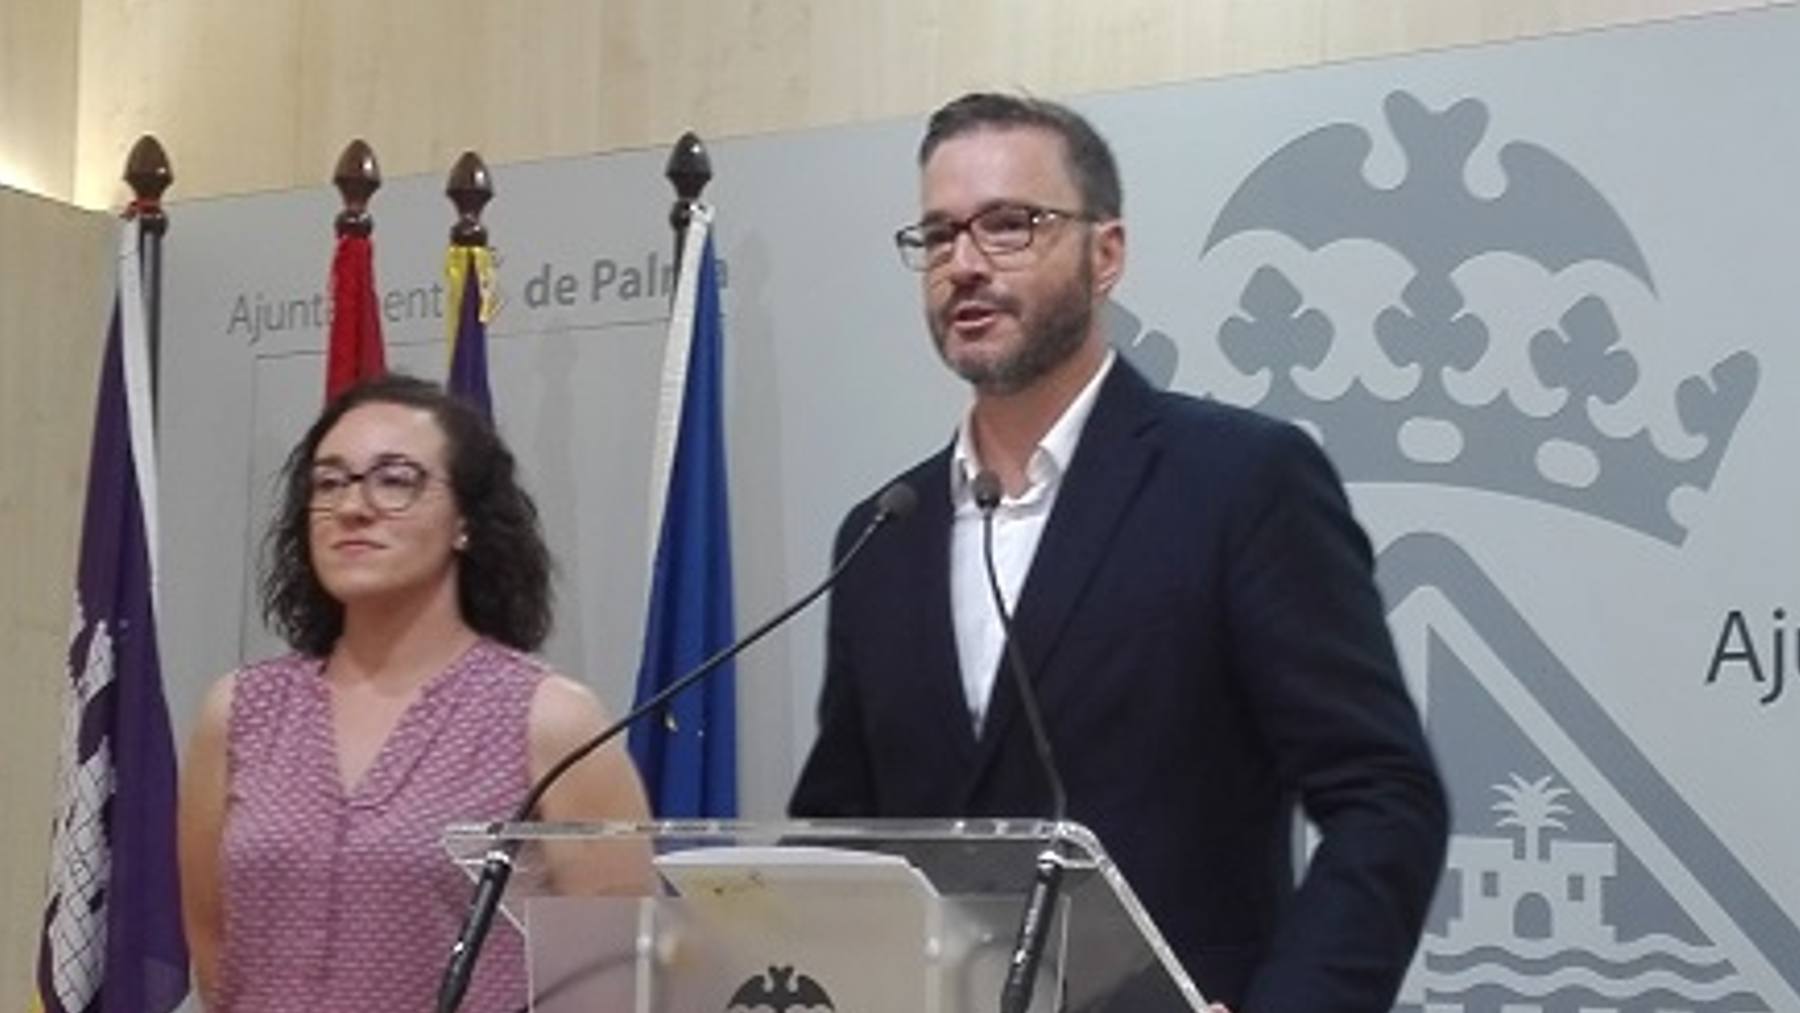 El alcalde de Palma, José Hila, y la concejala socialista de Seguridad, Joana María Adrover.